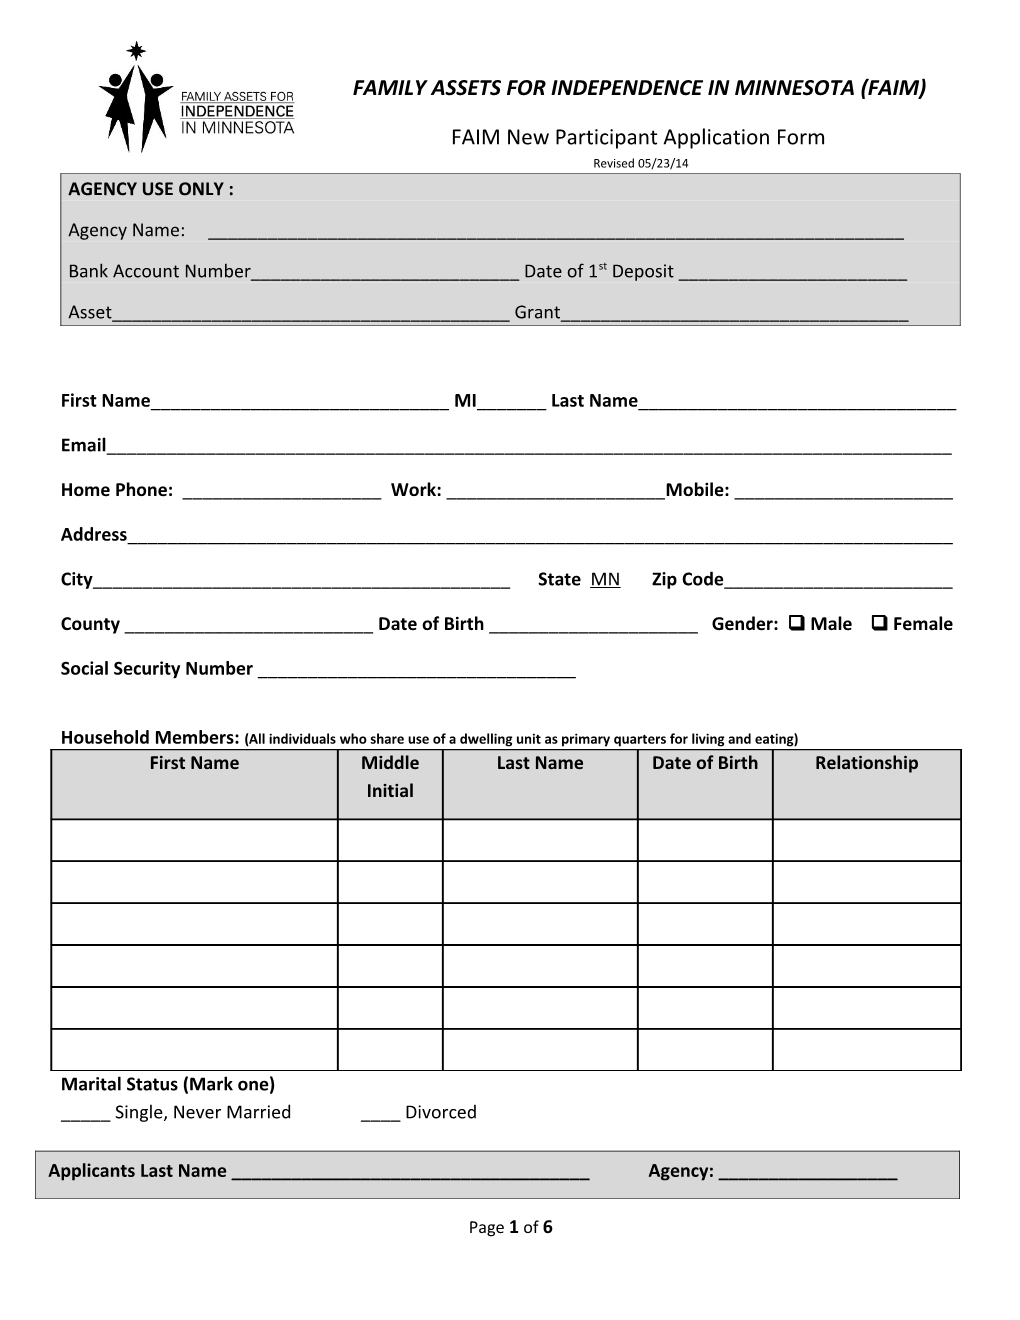 FAIM New Participant Application Form